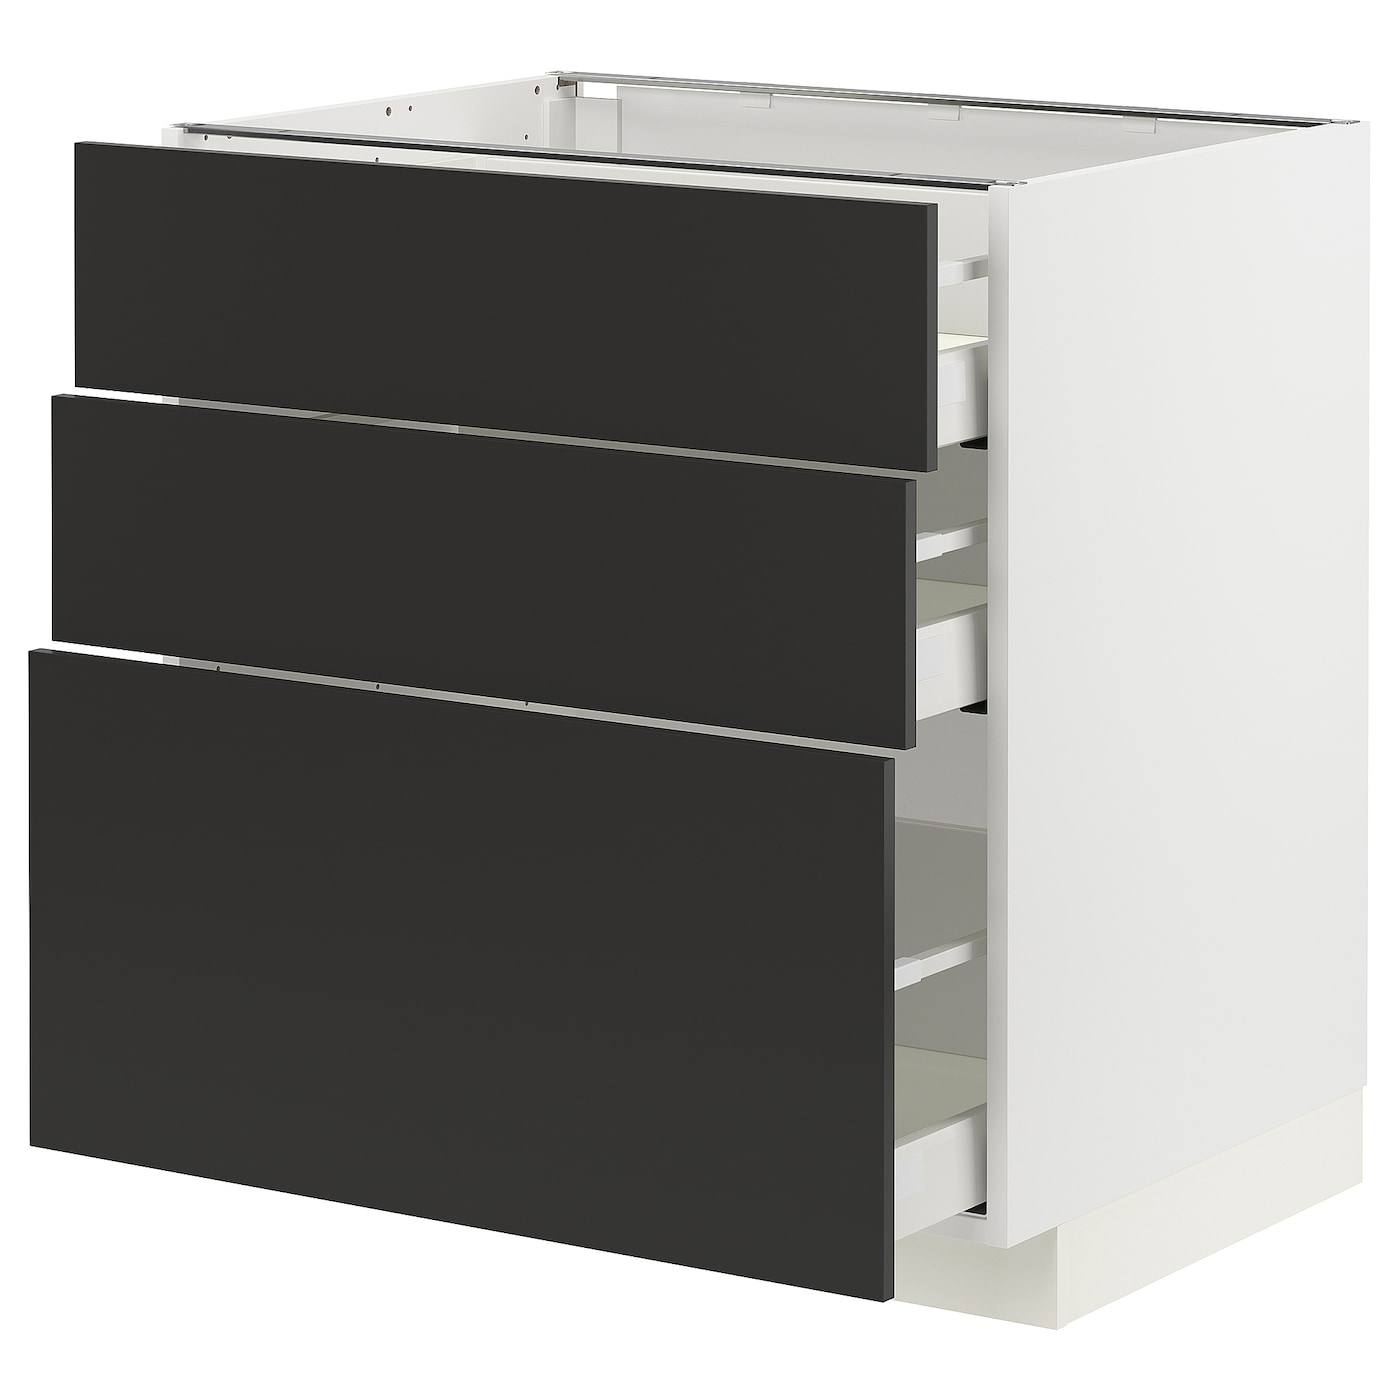 Напольный шкаф - IKEA METOD MAXIMERA, 88x62x80см, белый/черный, МЕТОД МАКСИМЕРА ИКЕА